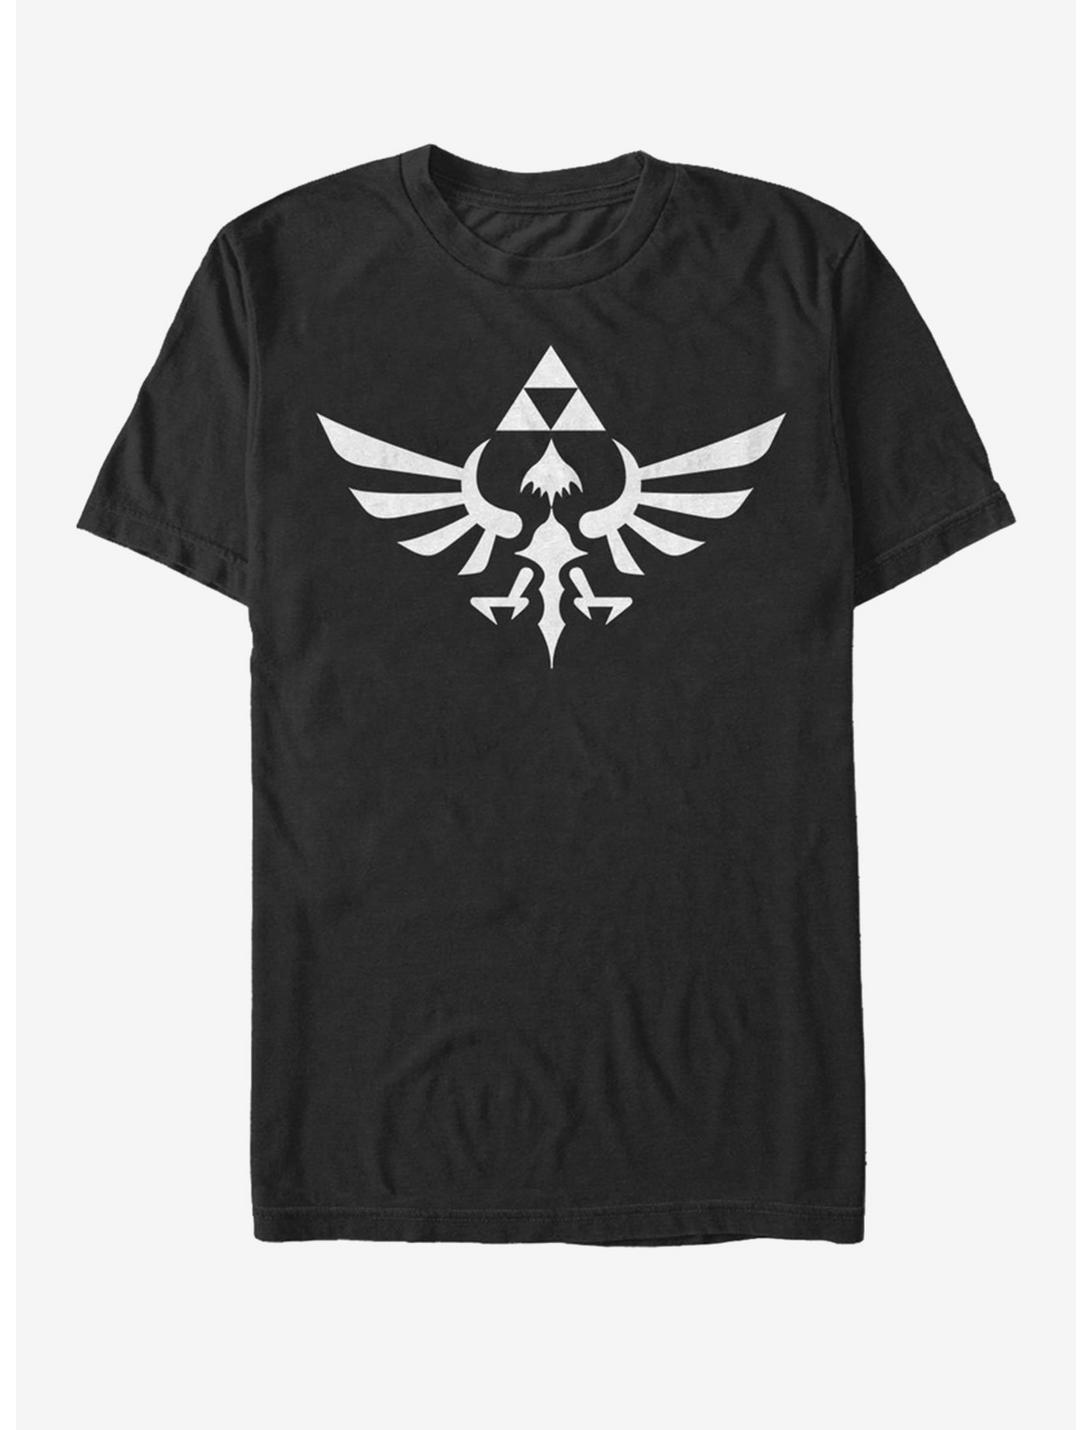 Nintendo Legend of Zelda Triumphant Triforce T-Shirt, BLACK, hi-res